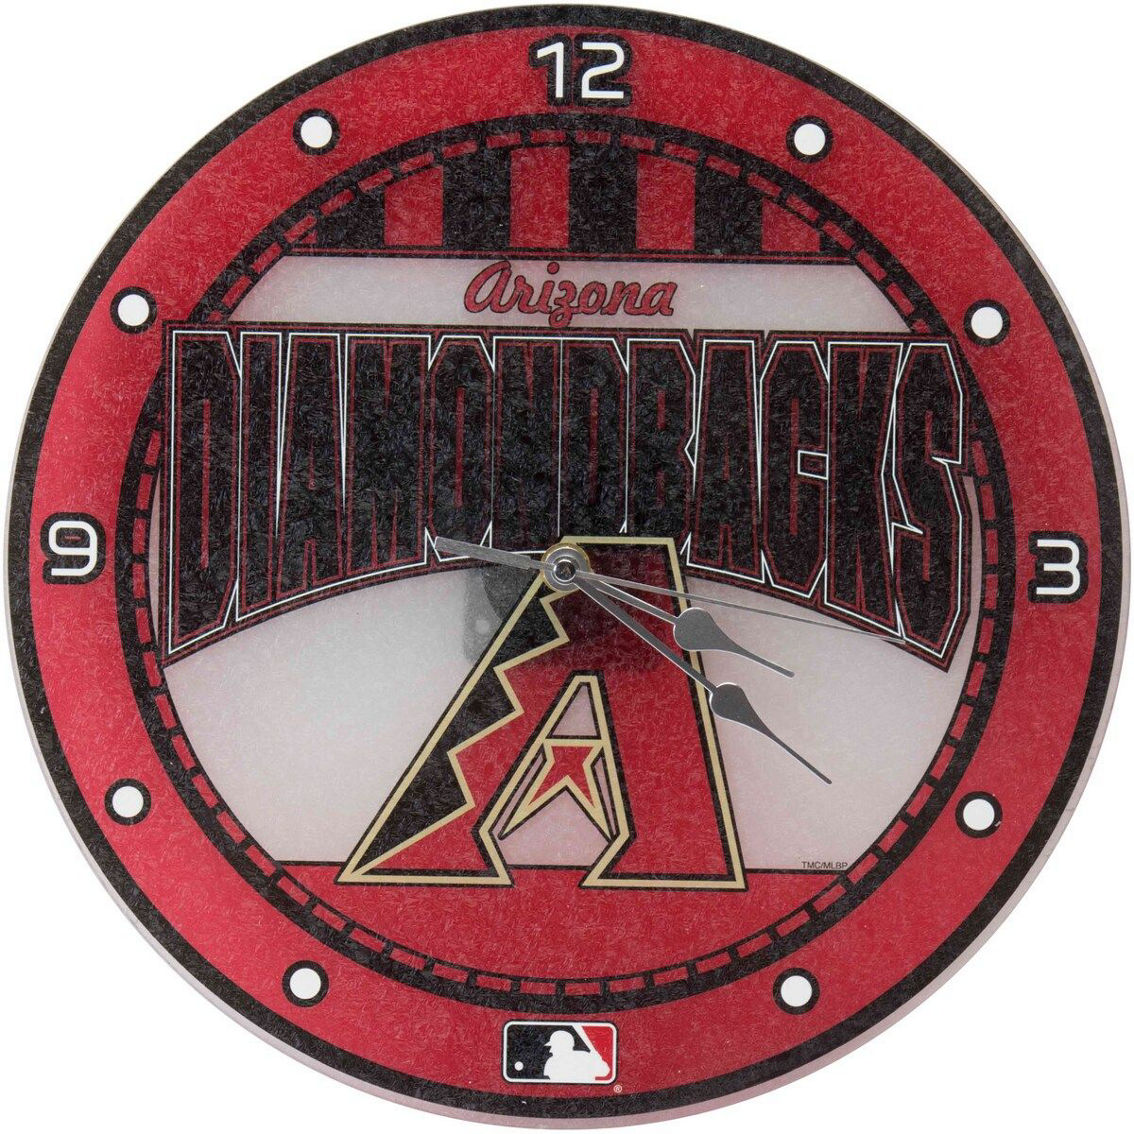 The Memory Company Arizona Diamondbacks Art Glass Wall Clock - Image 2 of 2